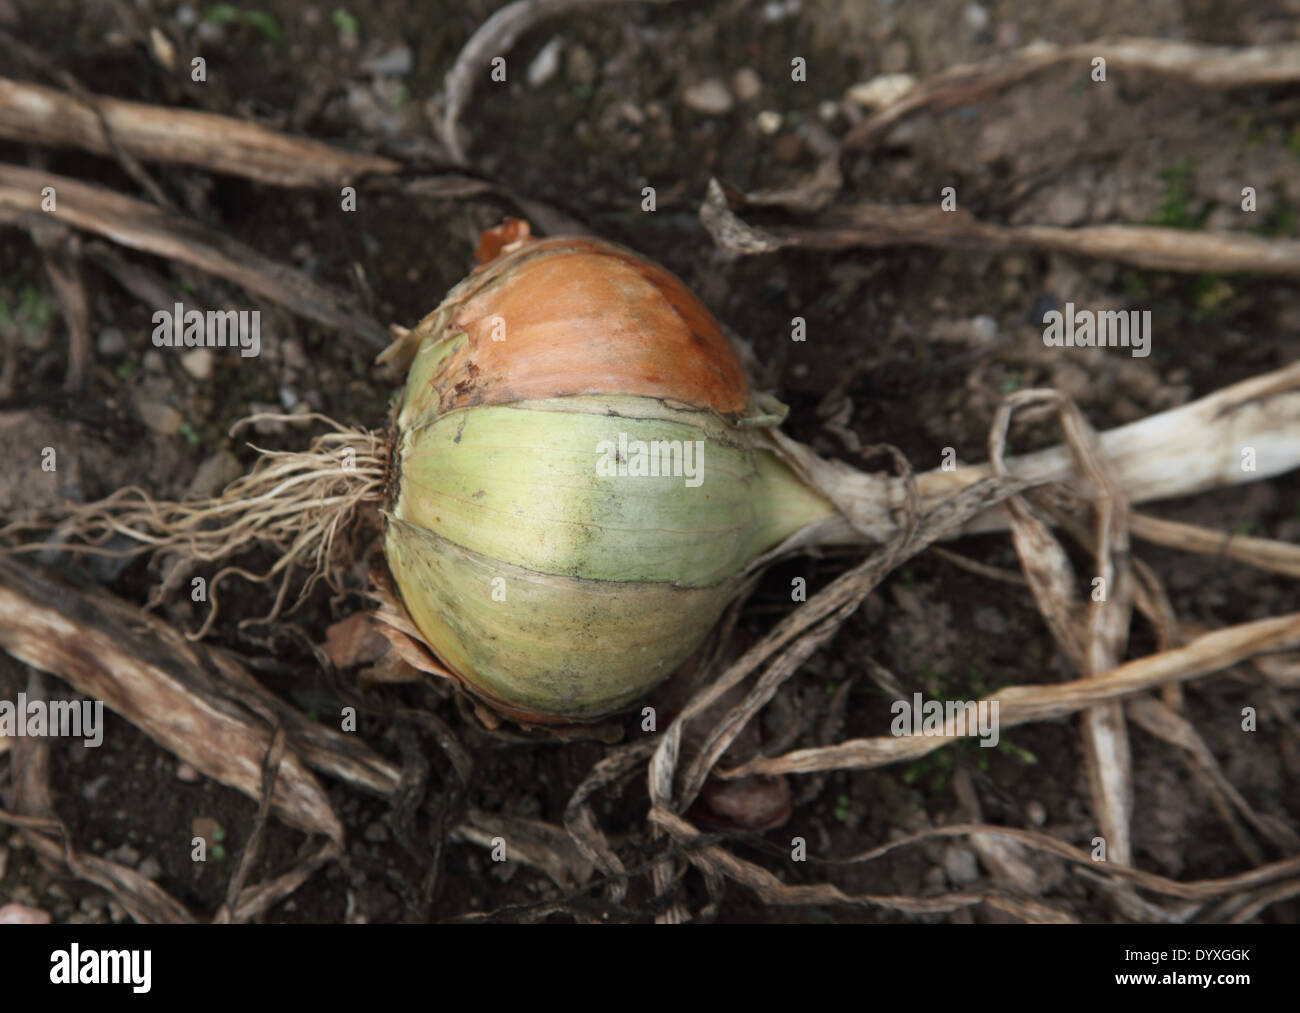 Allium cepa oignon 'Vulcan' près de l'ampoule jusqu'à maturité Banque D'Images